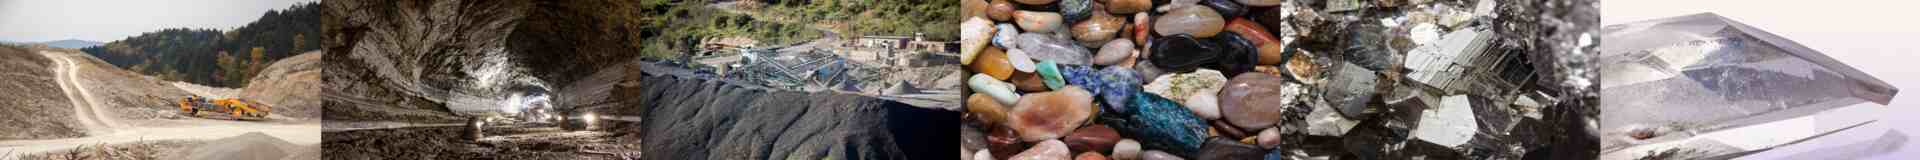 International Iran minerals and mining tenders